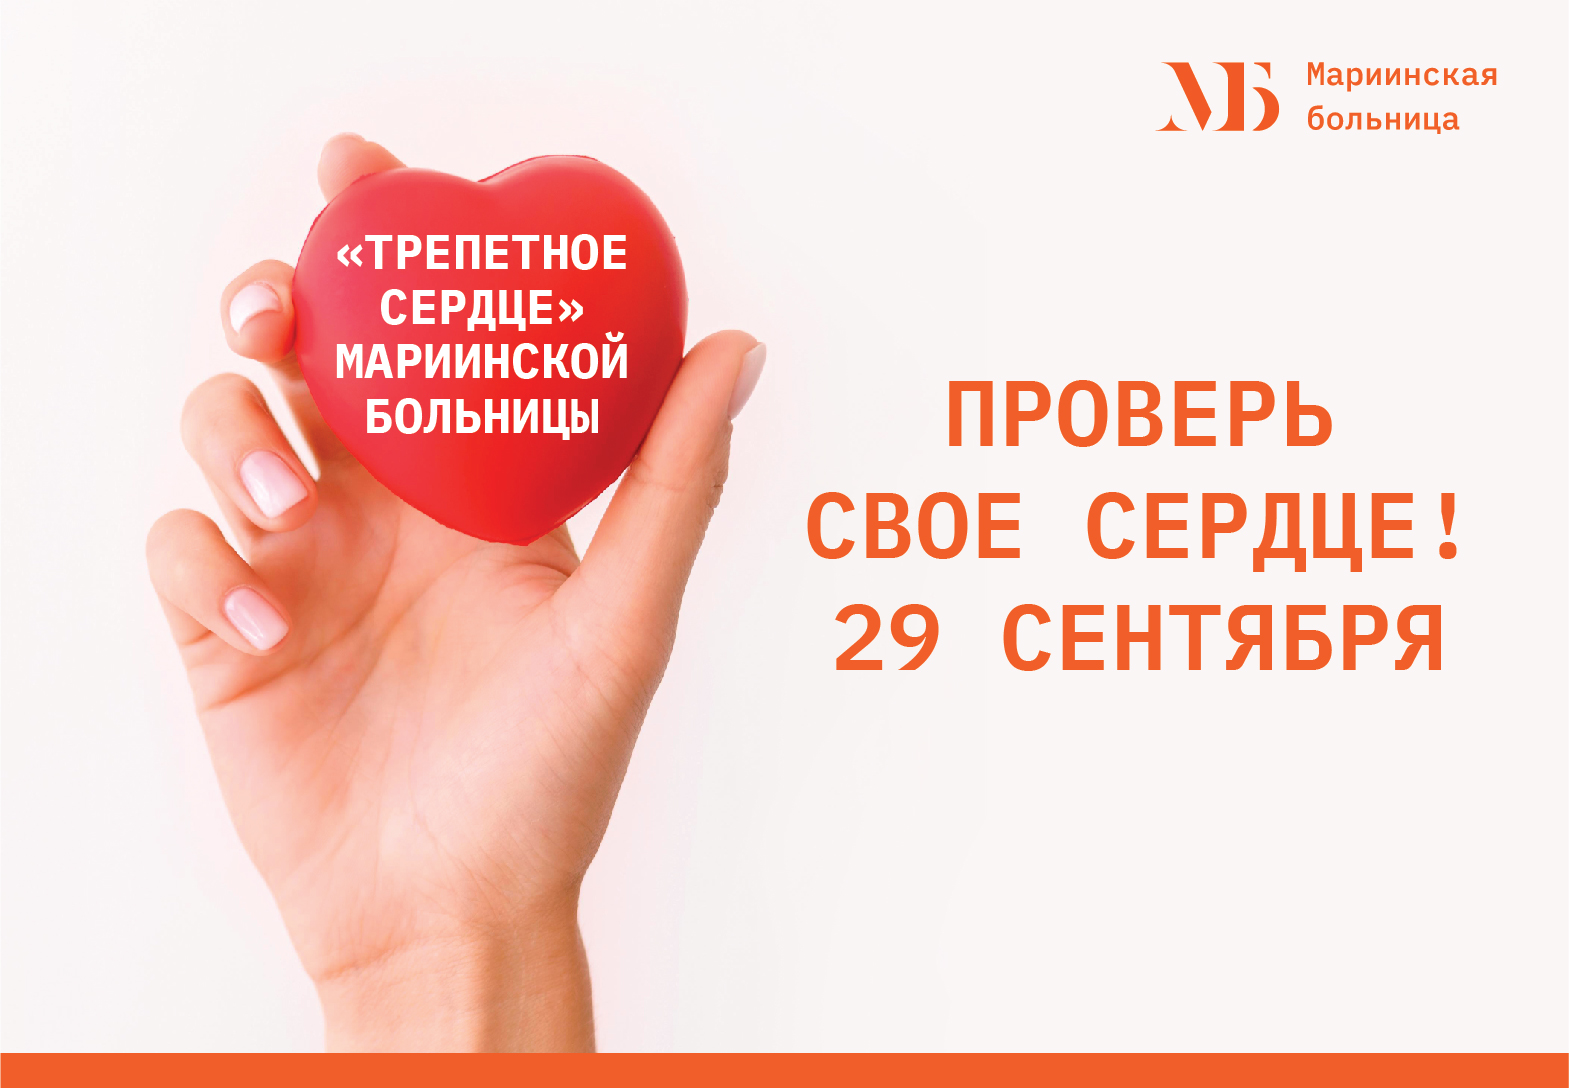 Новости Санкт-Петербурга: Петербуржцев пригласили бесплатно проверить сердце в Мариинской больнице 29 сентября